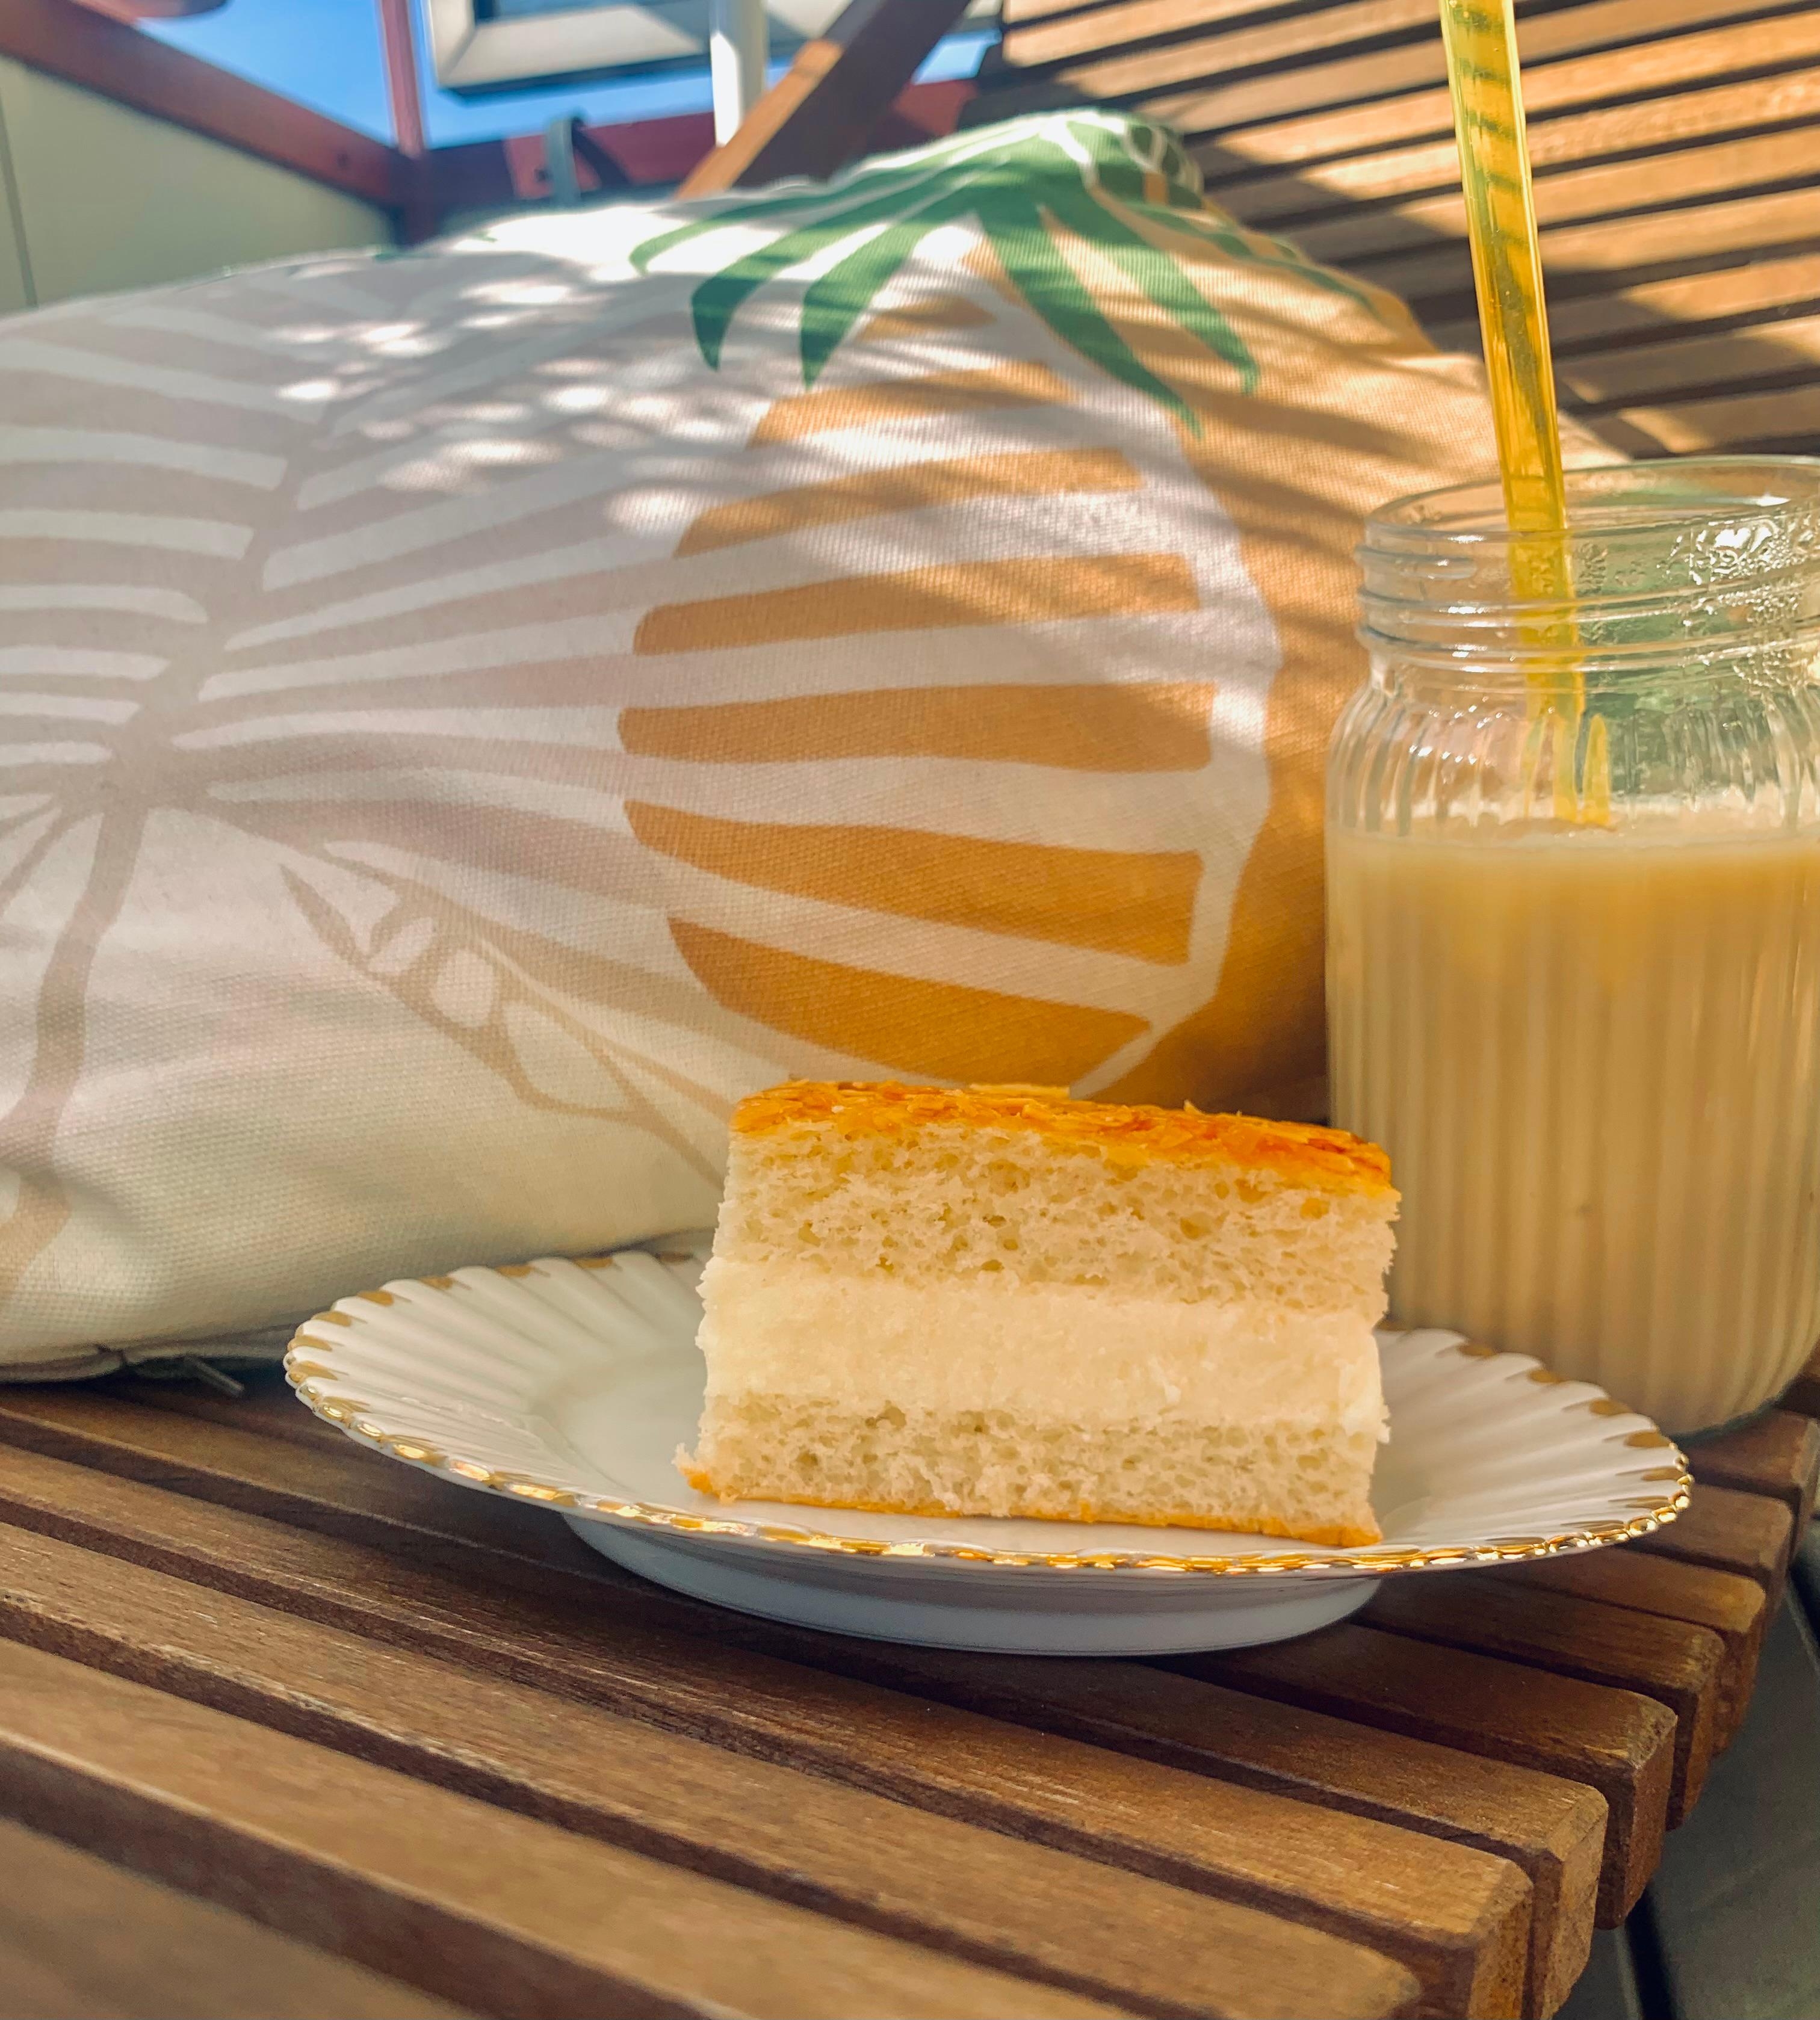 Café und Kuchen am Montag 
☕️🥧💛
#food #balkon #kissen #glas #holzliege